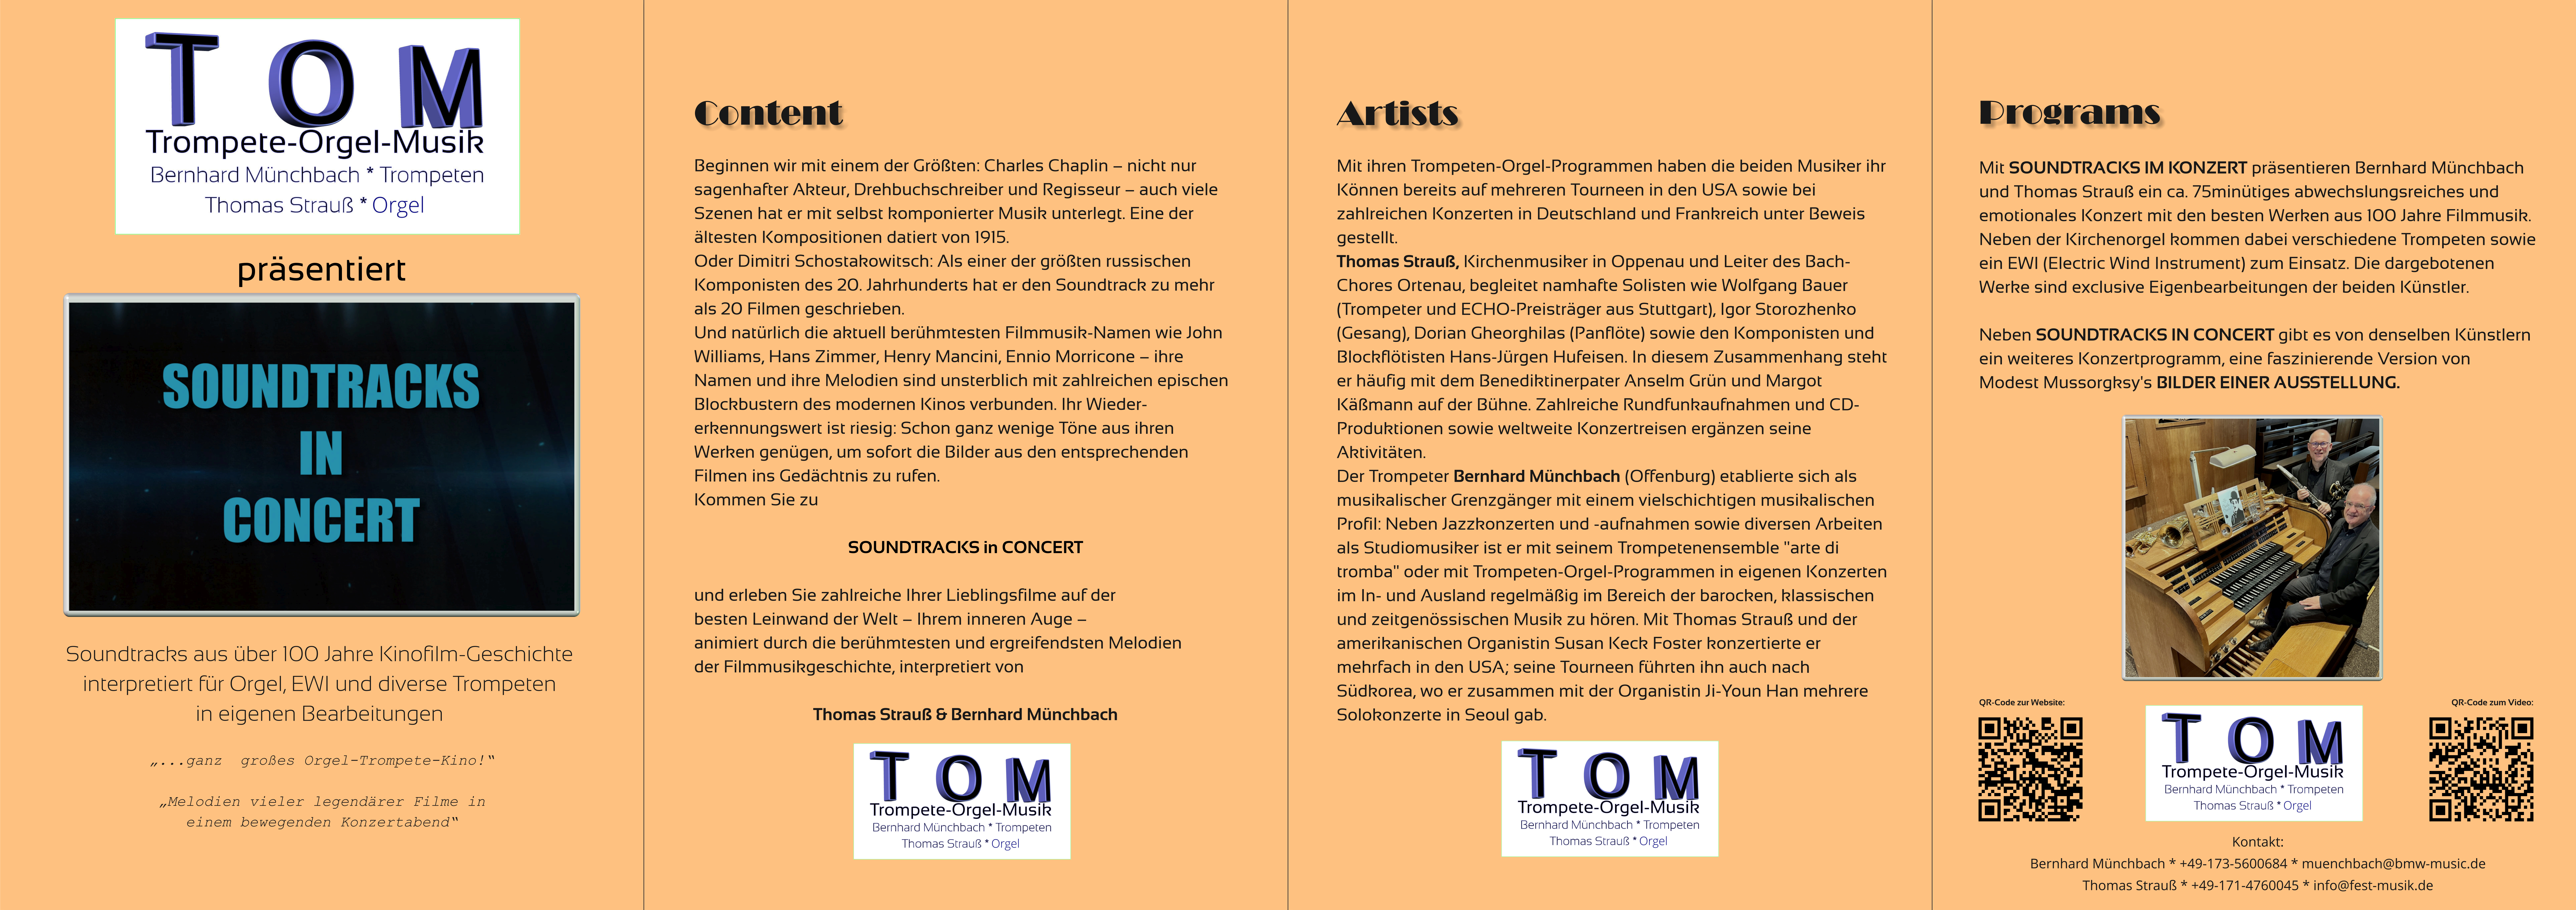 TOM-Film-Musik Flyer